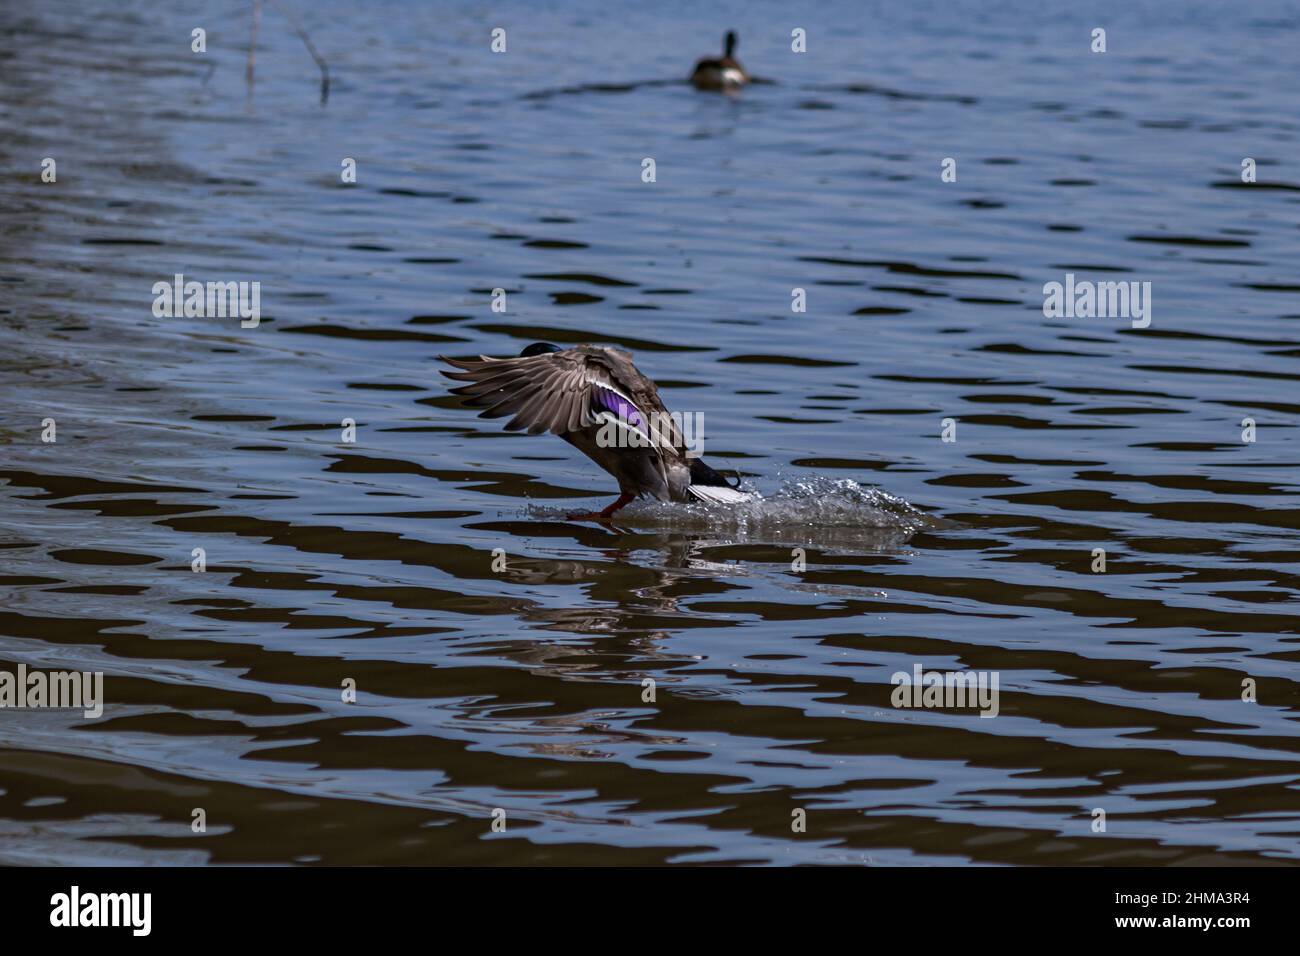 Mallard anatra atterraggio sull'acqua, piedi giù e ali fuori. Foto Stock